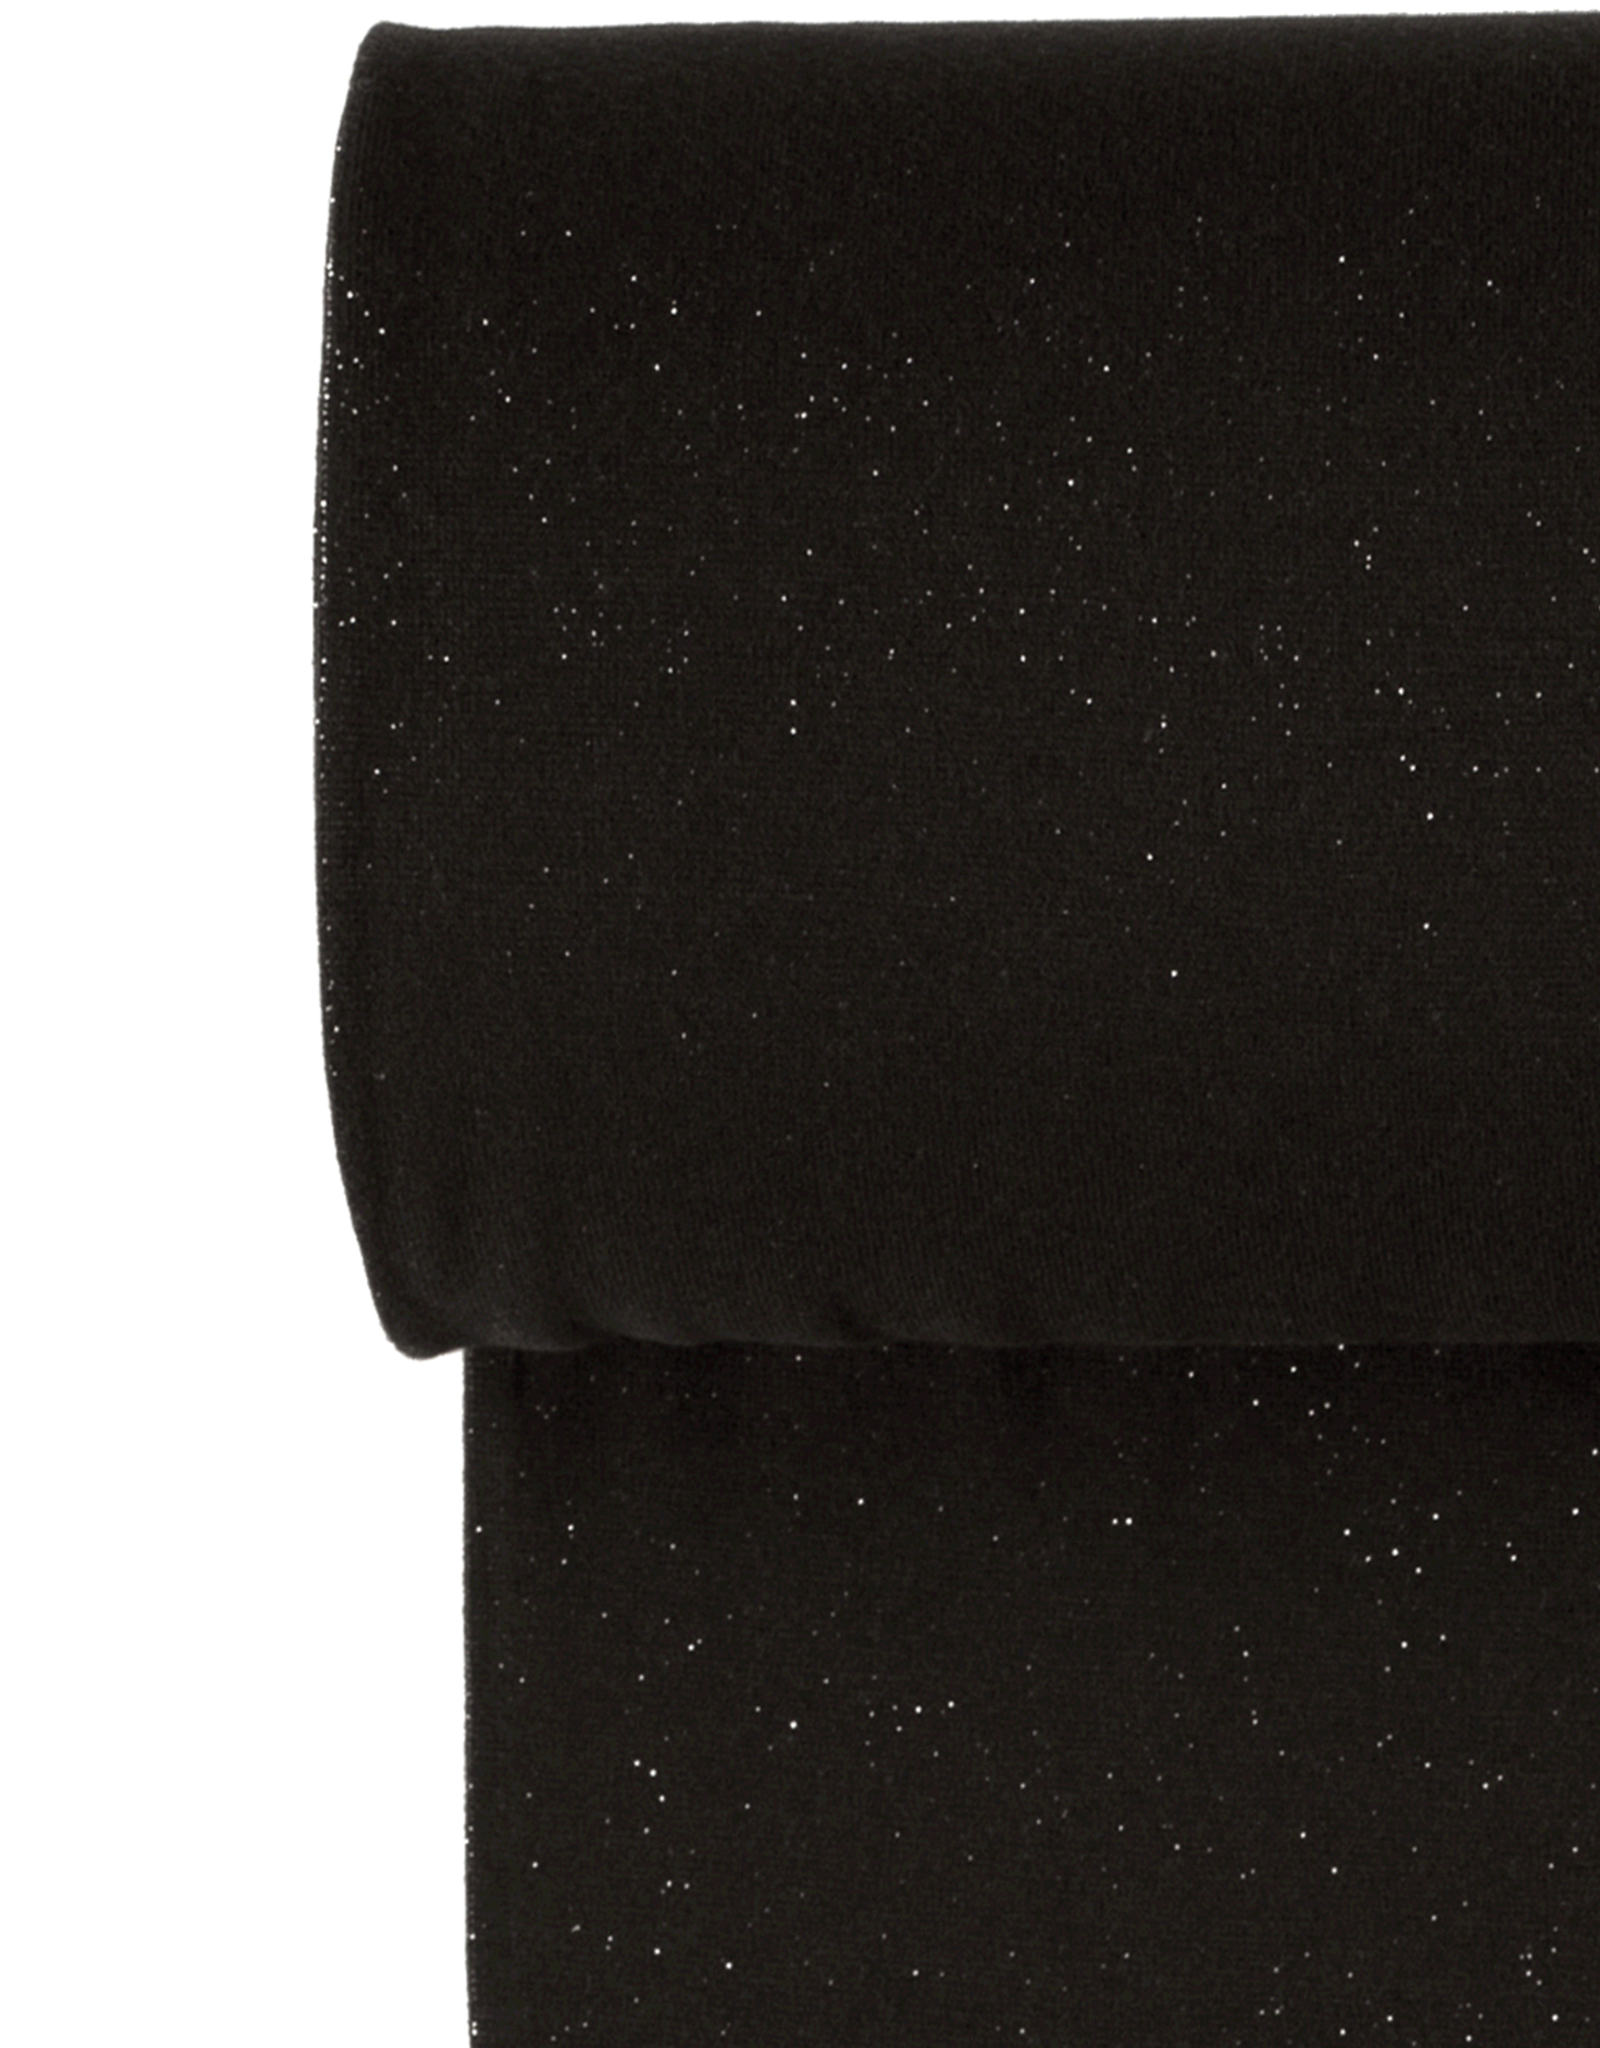 Stoffenschuur selectie Glitterboordstof vlak lurex zilver zwart rondgebreid 35cm